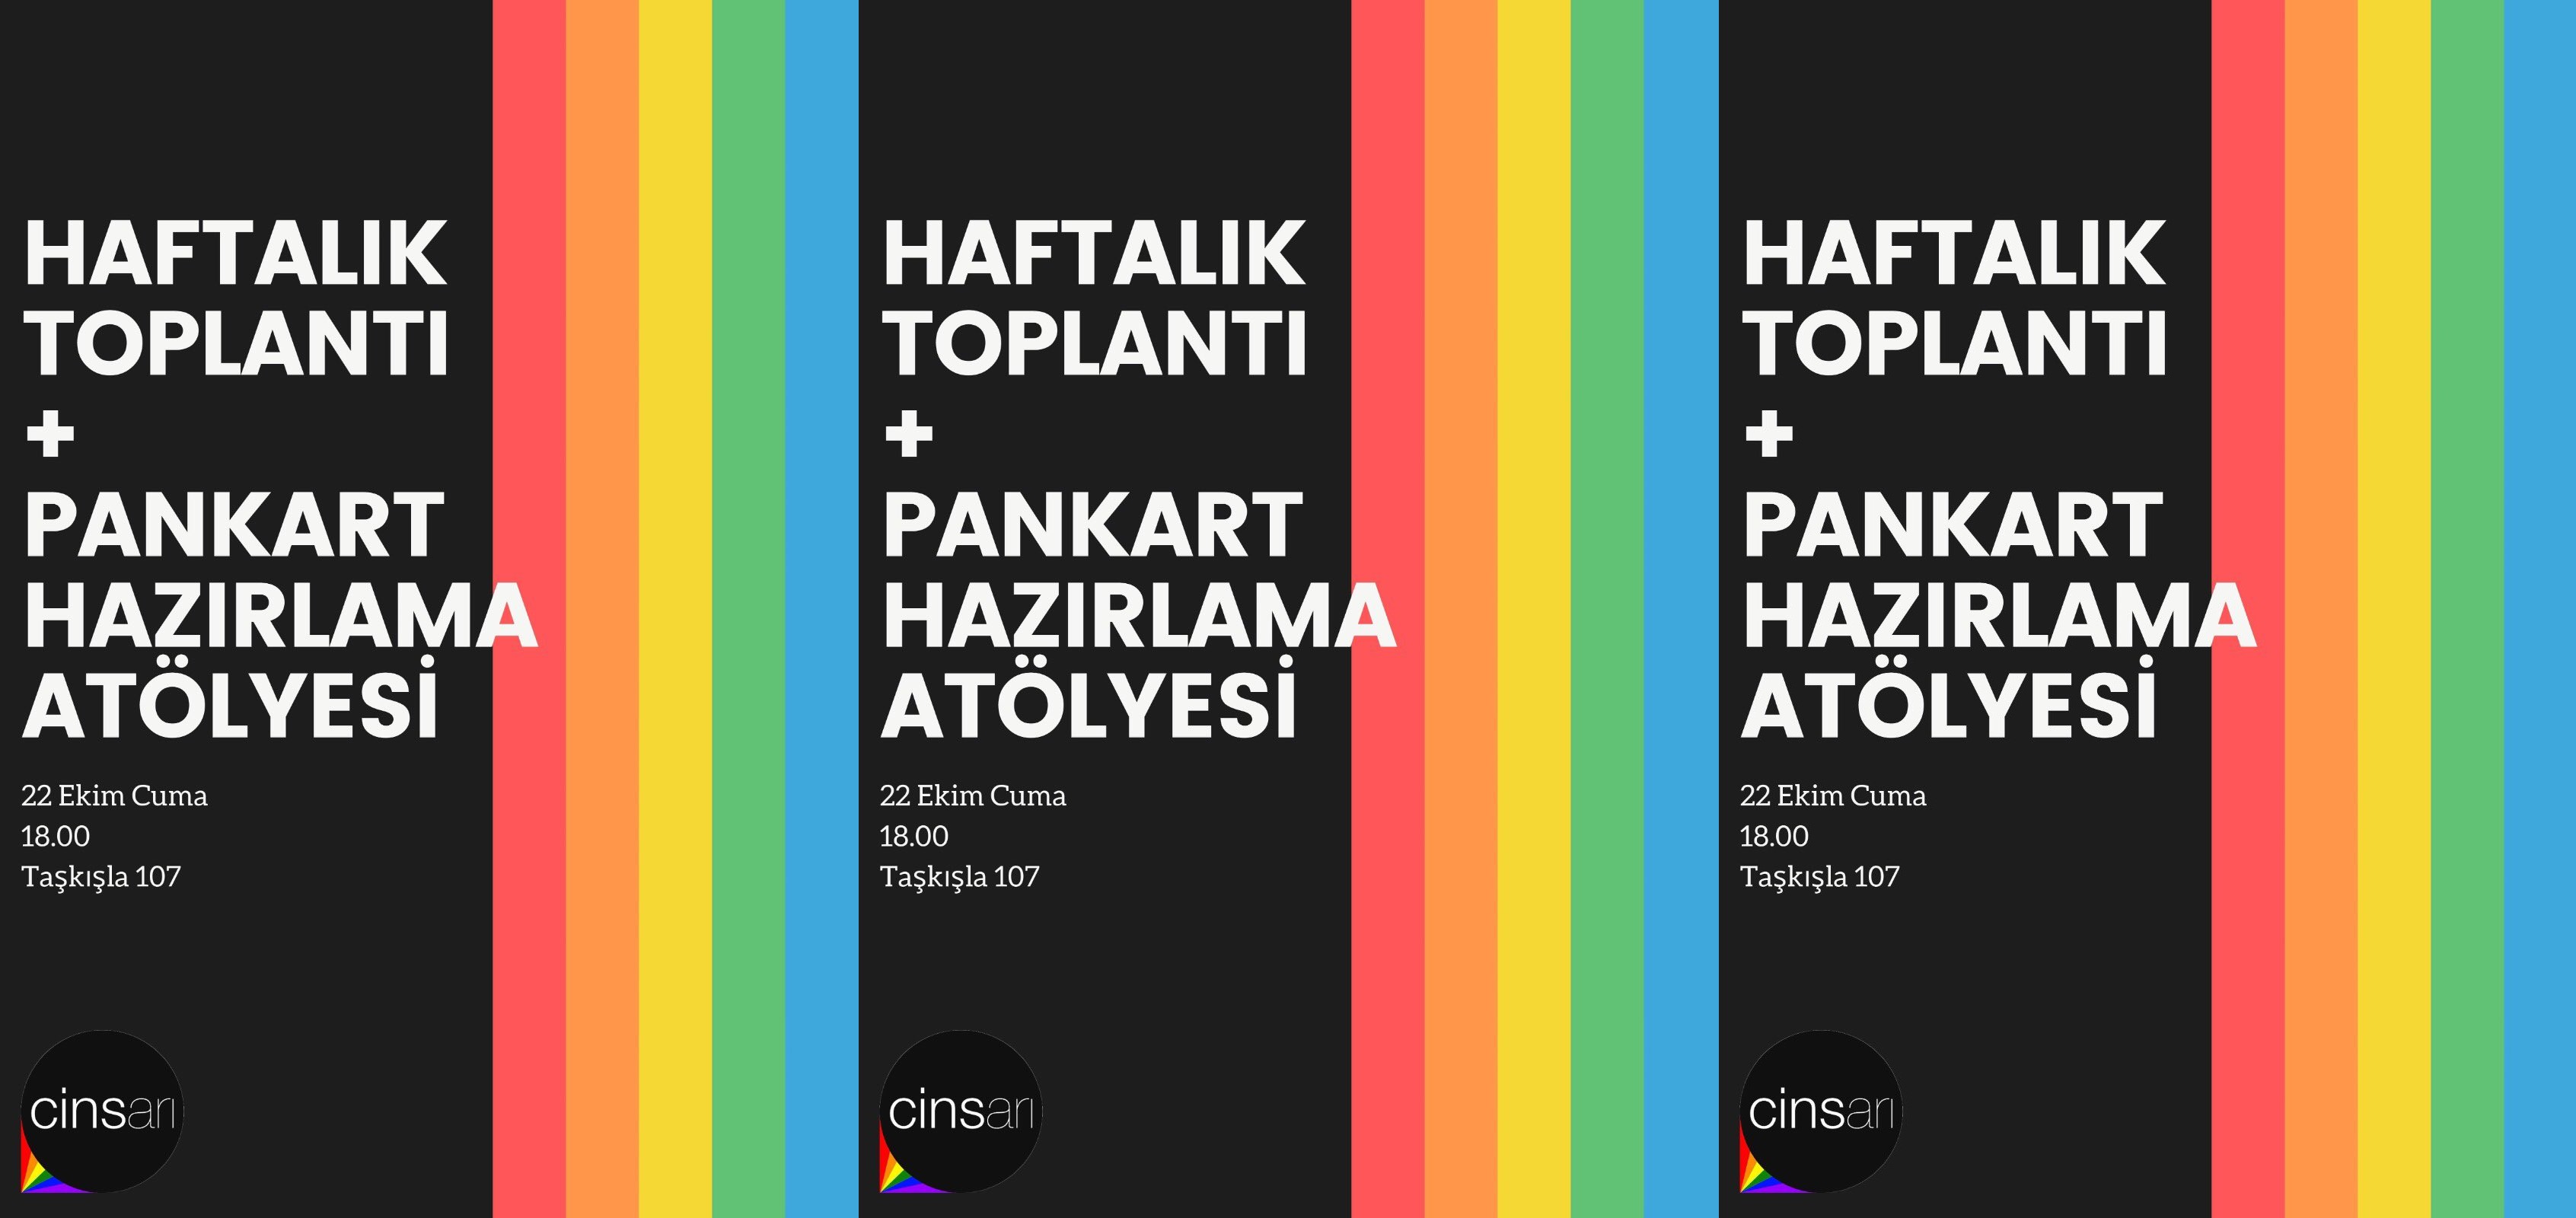 Cins Arı pankart hazırlama atölyesine çağırıyor Kaos GL - LGBTİ+ Haber Portalı